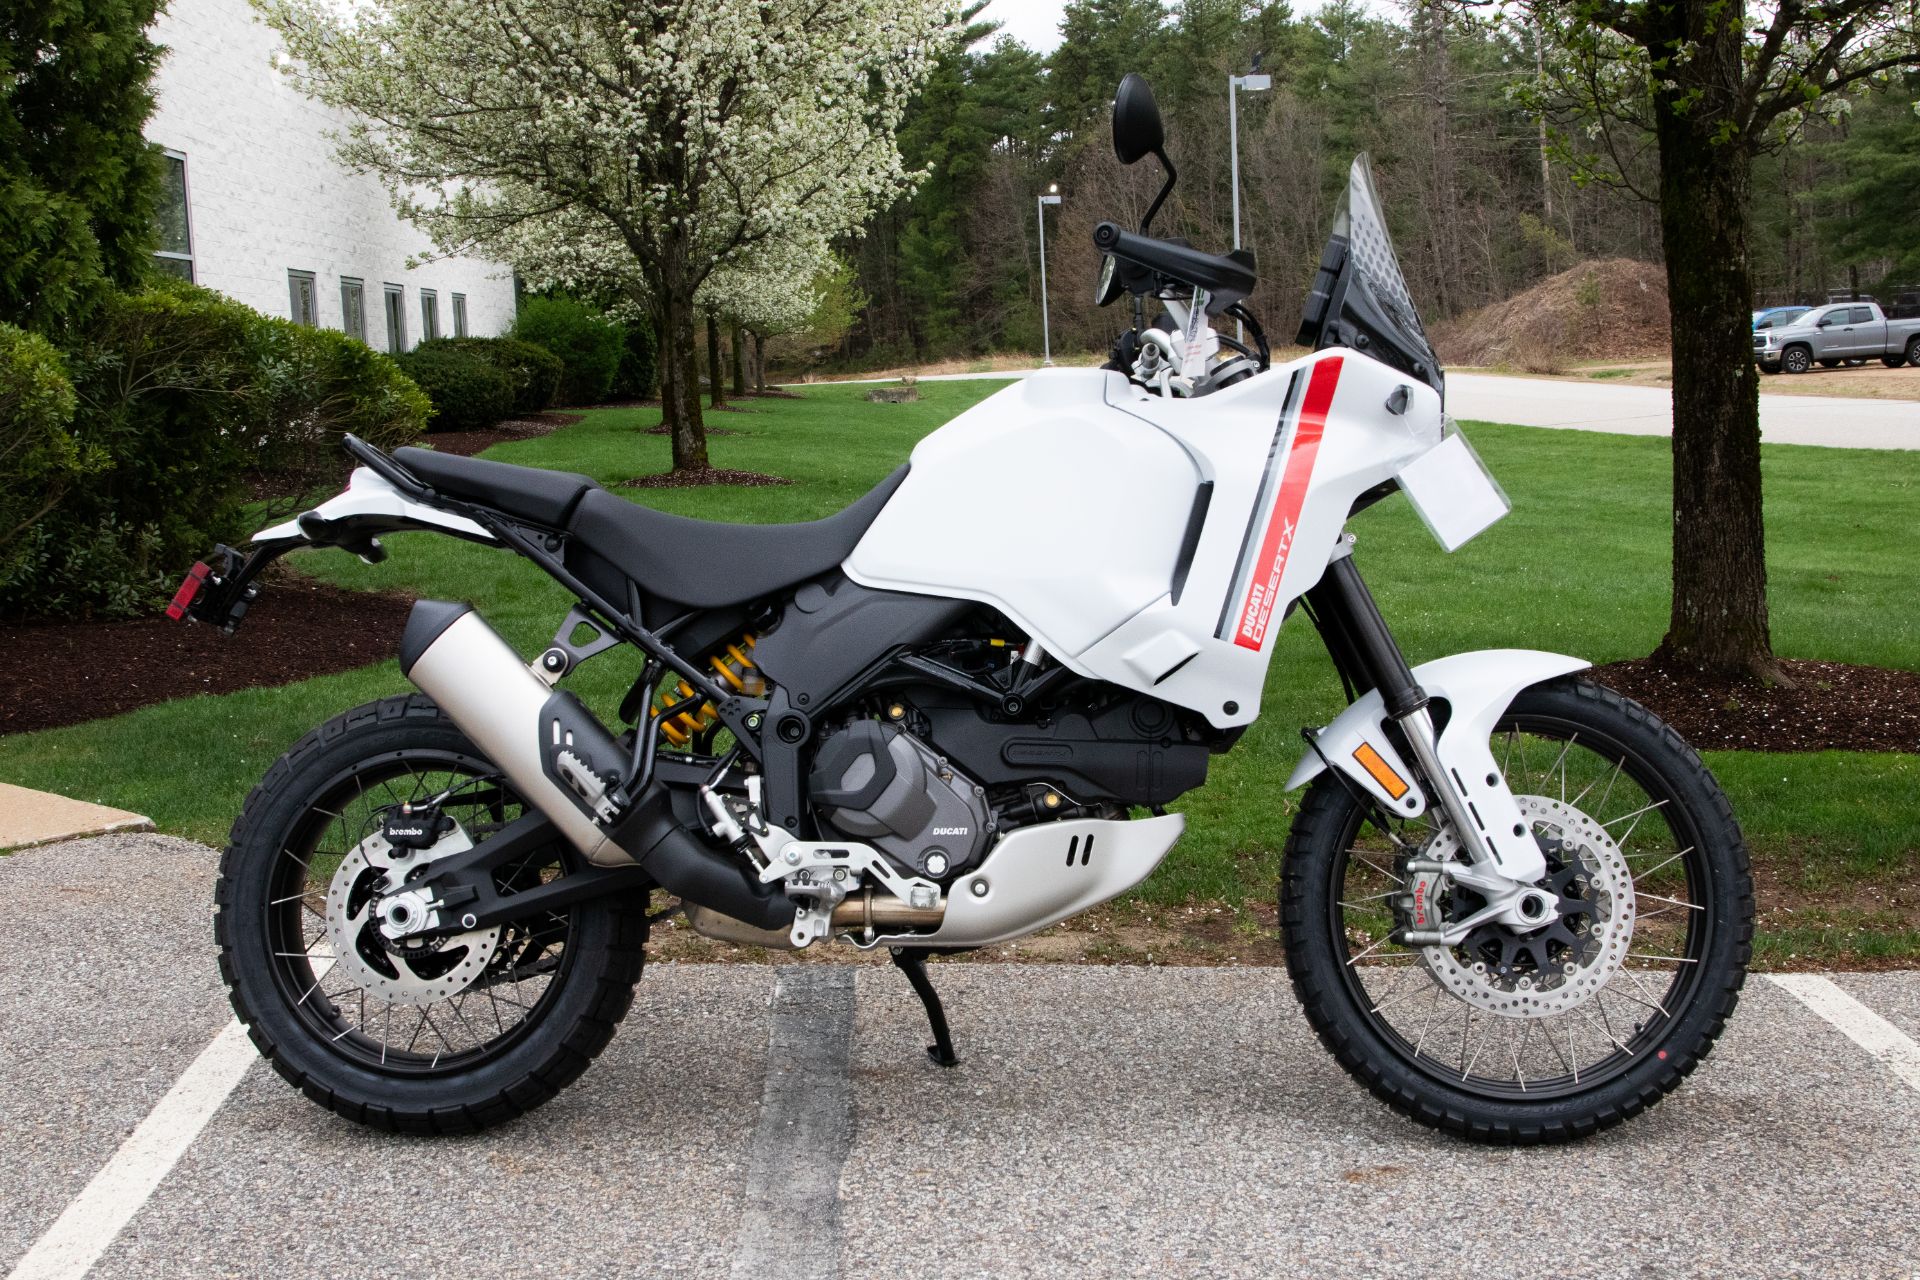 2023 Ducati DesertX in Concord, New Hampshire - Photo 1